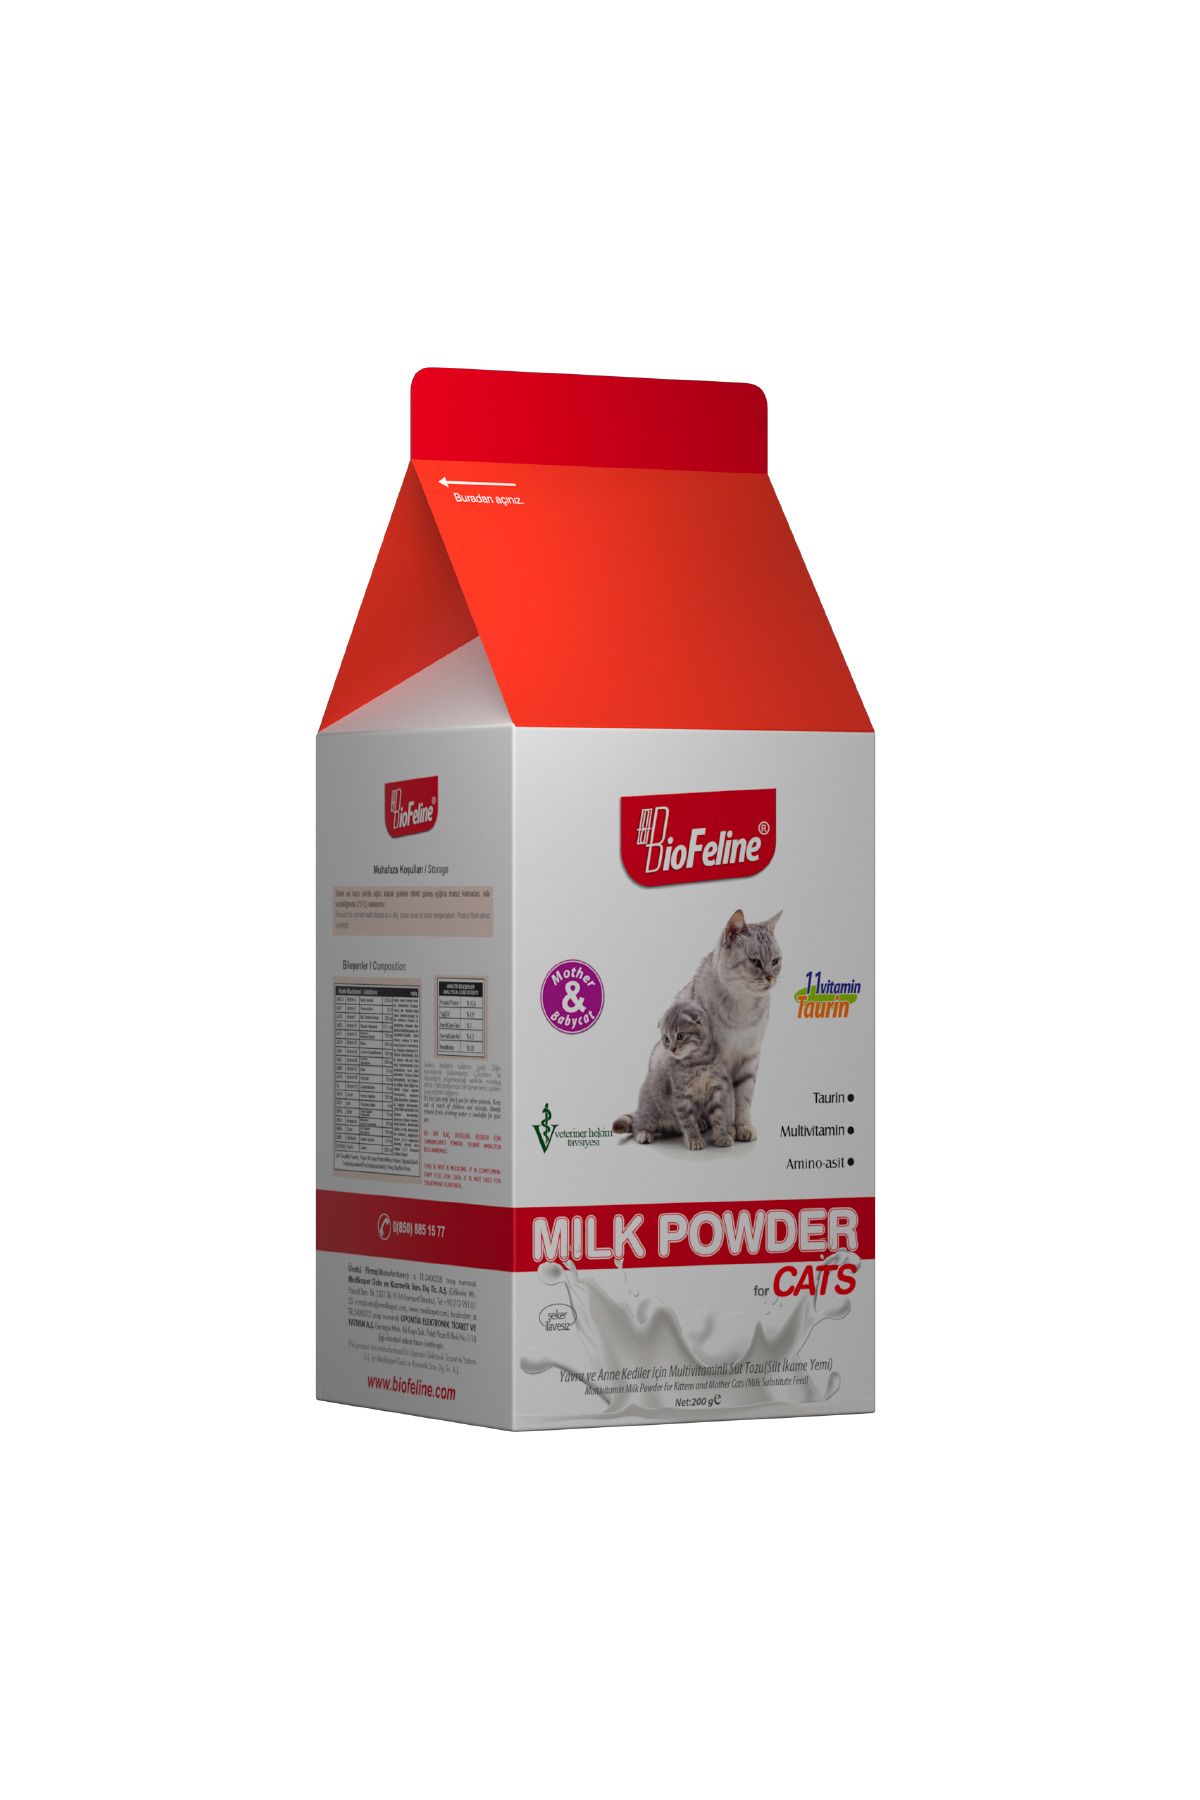 BioFeline Kedi Süt Tozu 200g - Biberon Hediyeli (YAVRU VE ANNE KEDİLER İÇİN ANNE SÜT TOZU)